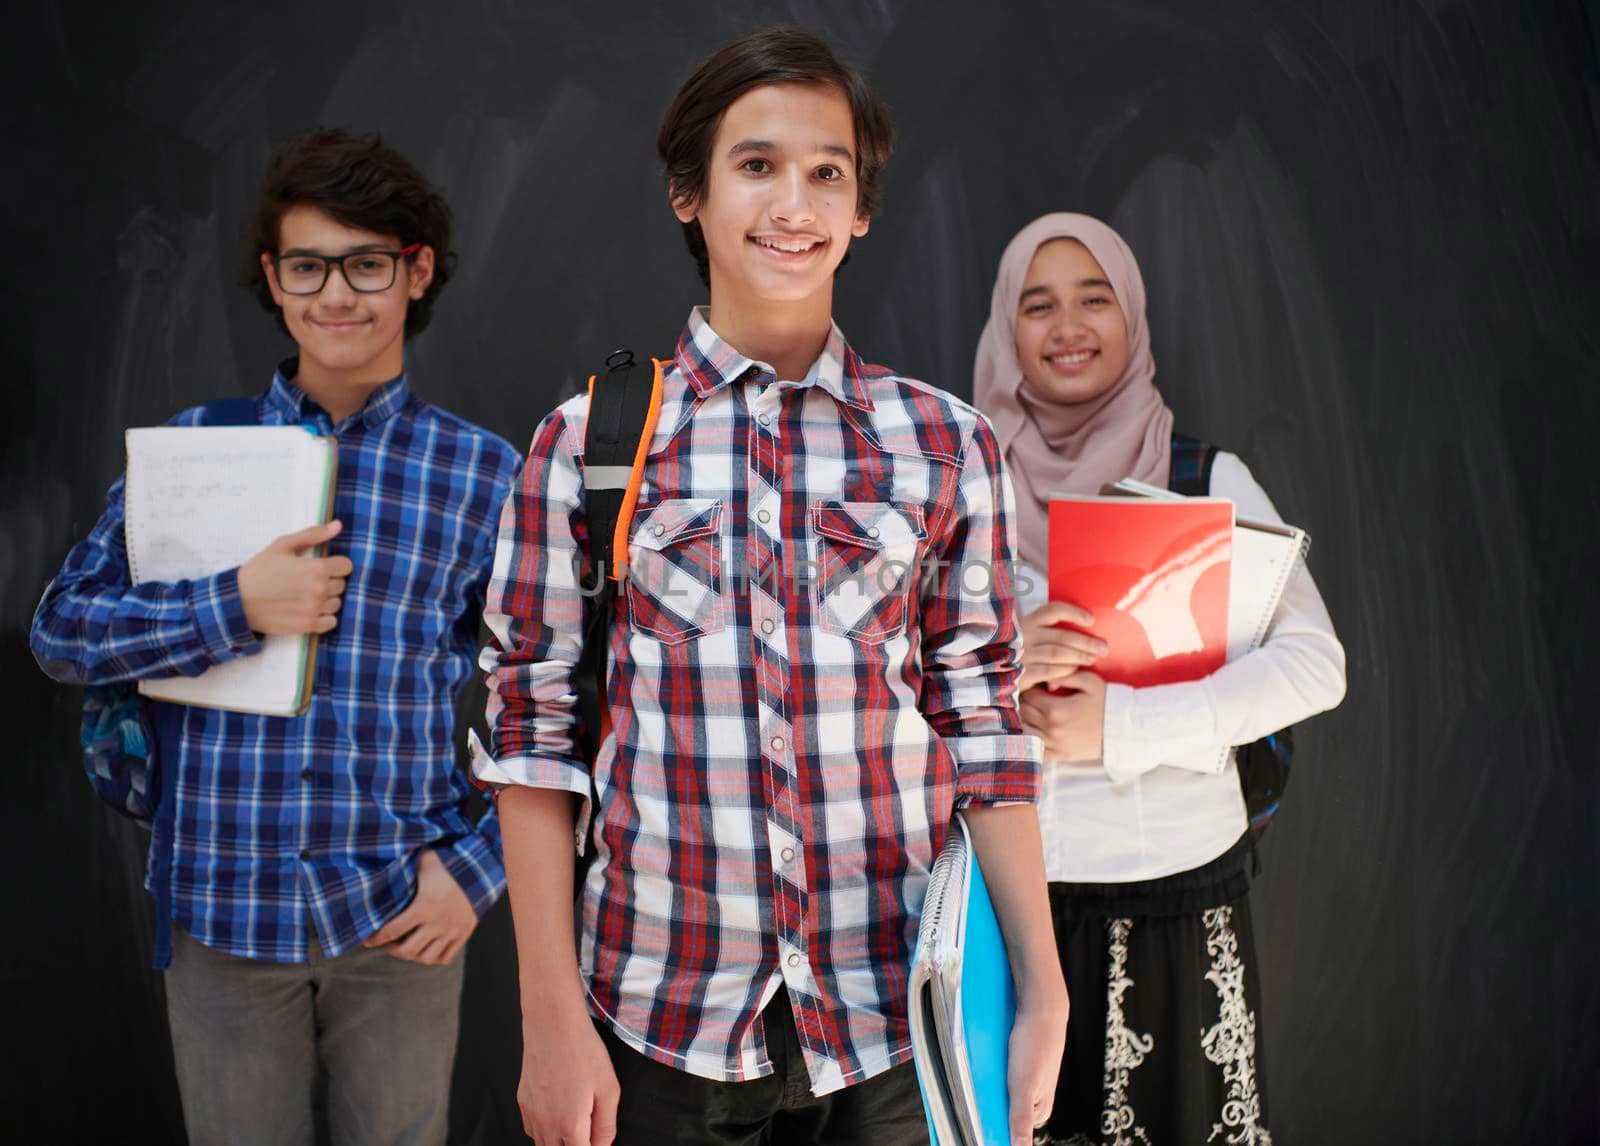 Arab teenagers group by dotshock